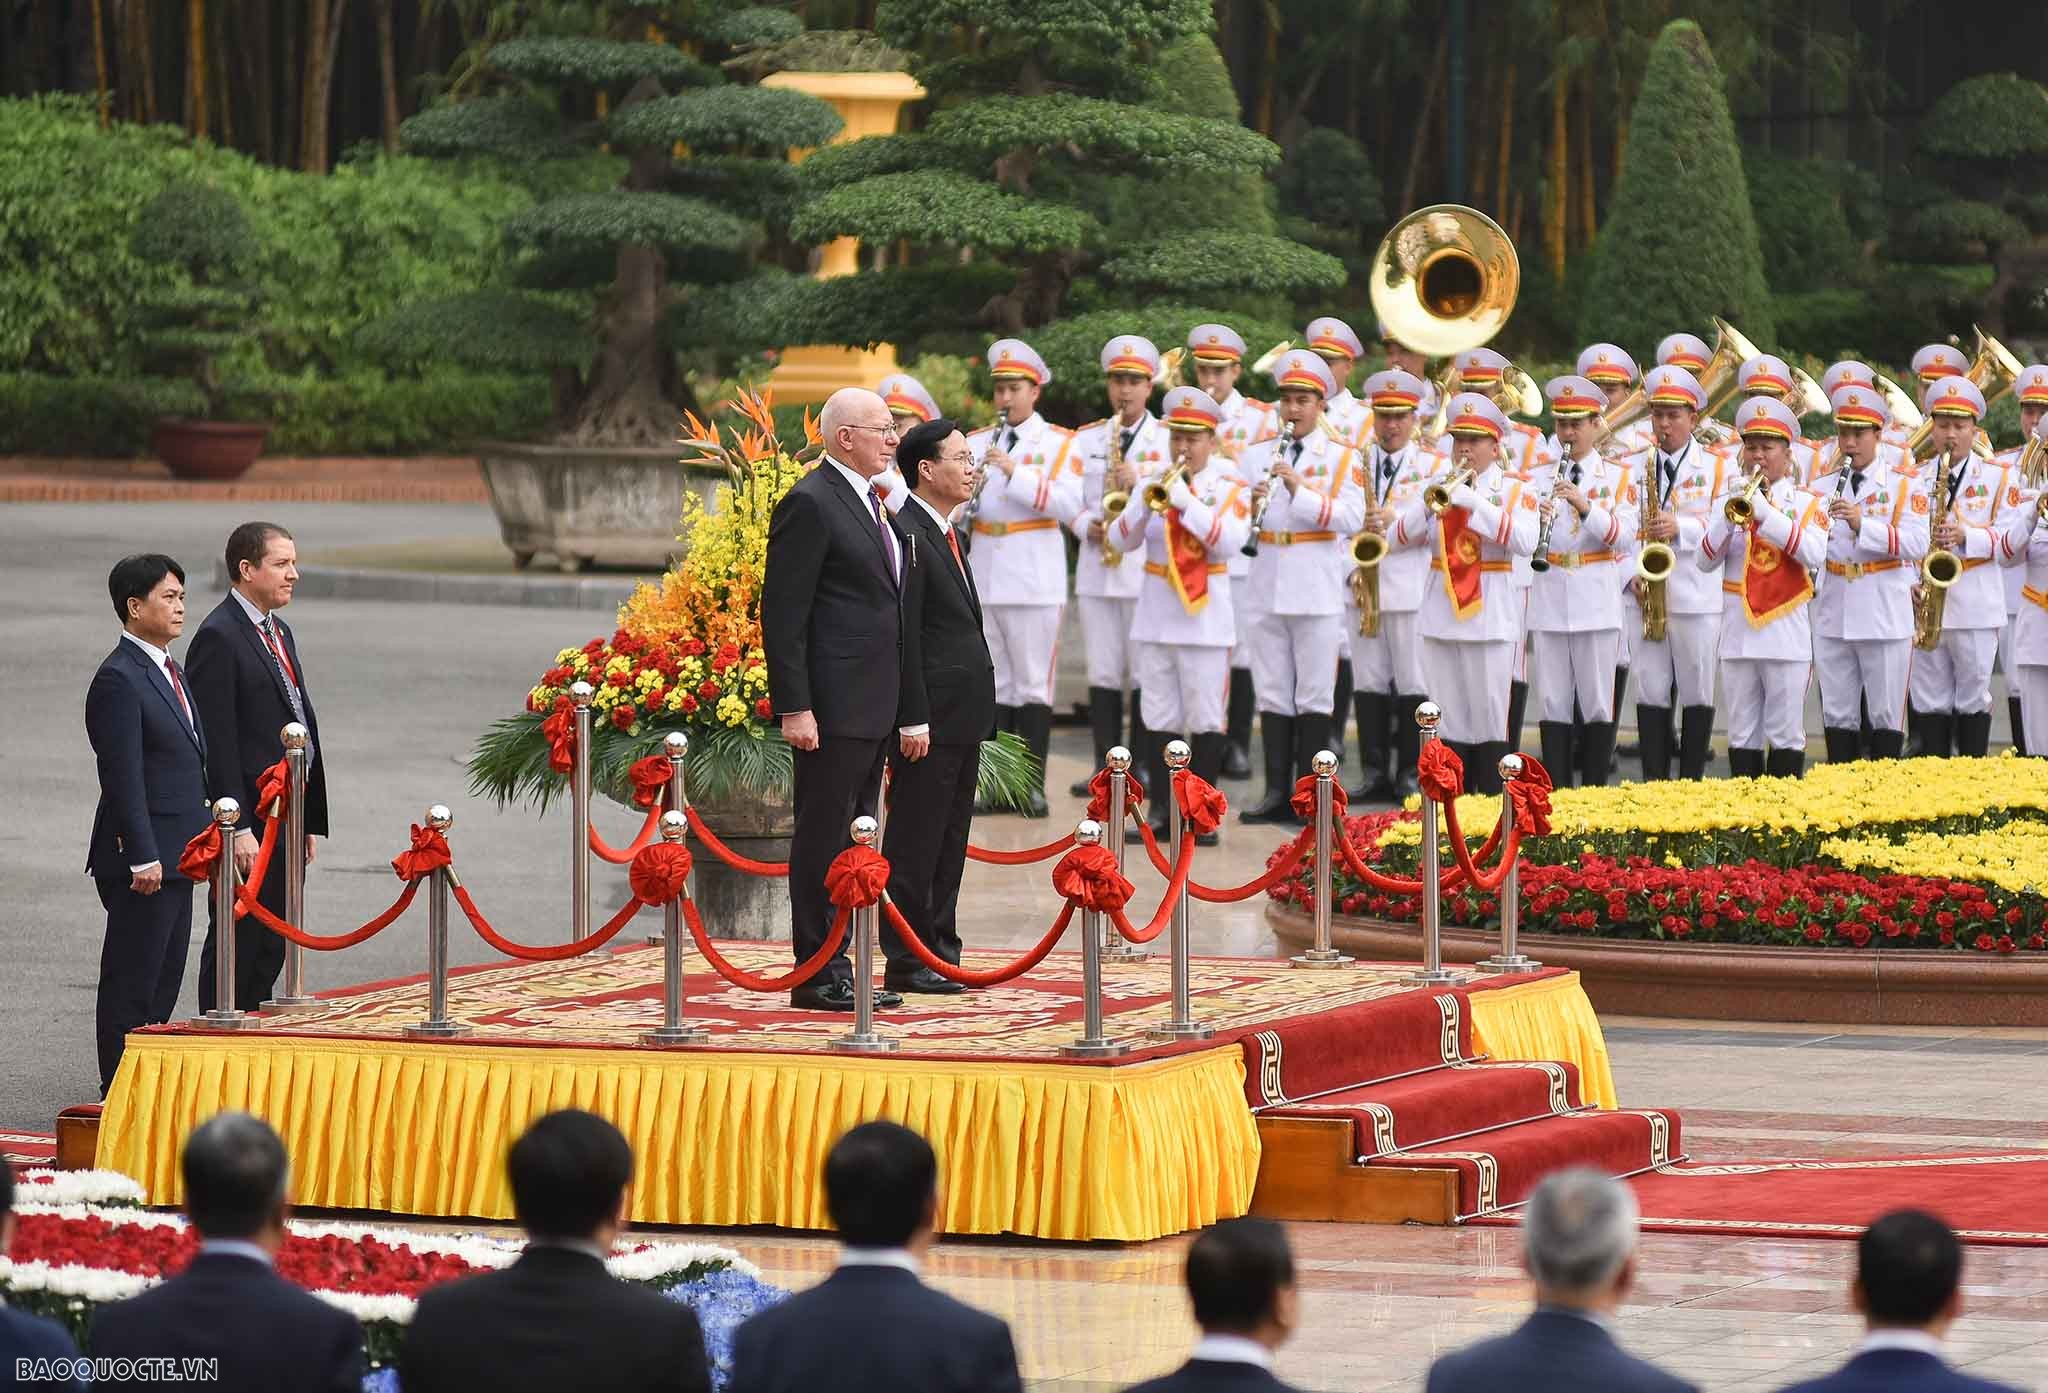 Đây là lần thứ ba lãnh đạo Nhà nước của Australia thăm Việt Nam, ông David Hurley là người đầu tiên trong số những lãnh đạo cấp cao quan trọng của Australia sẽ đến Việt Nam trong năm nay.